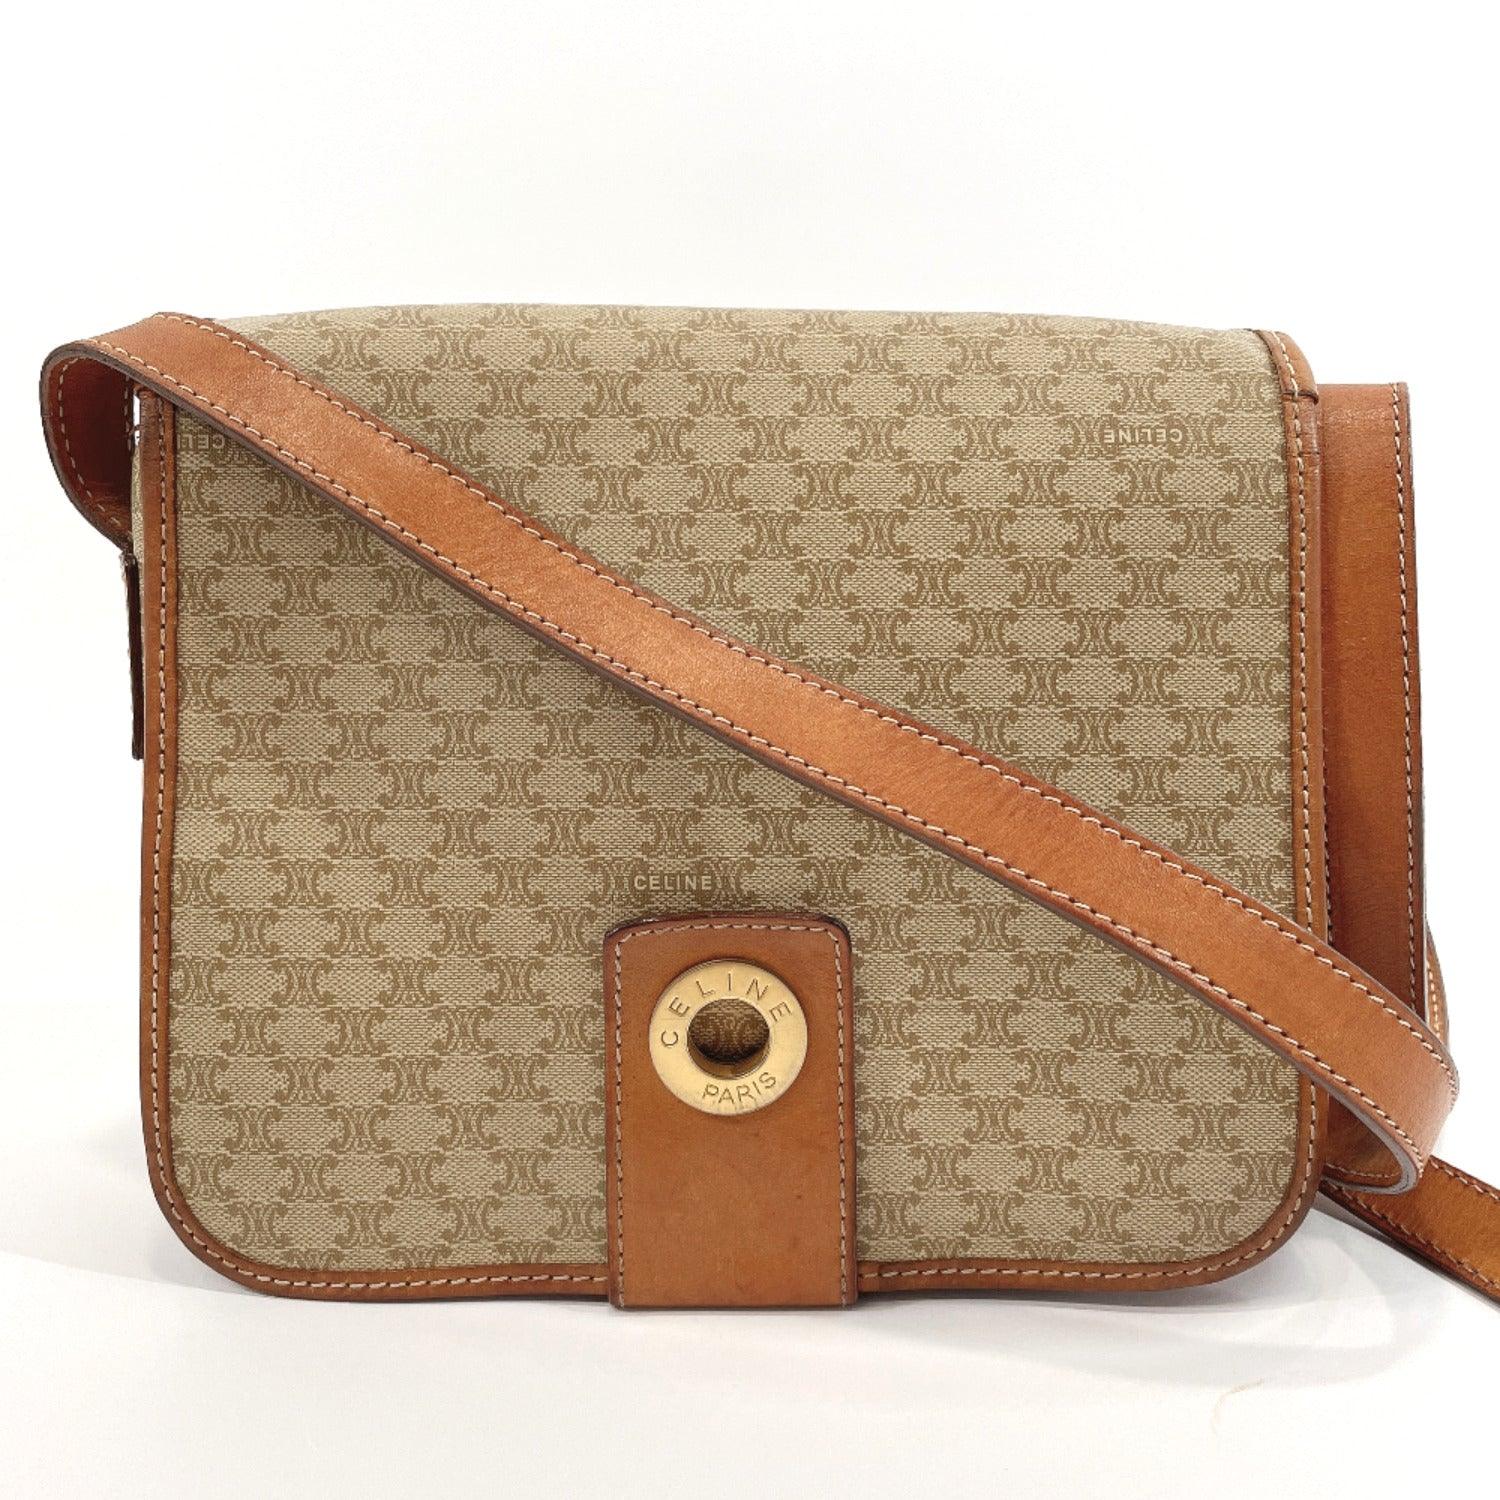 Celine Vintage Macadam Backpack - Brown Backpacks, Handbags